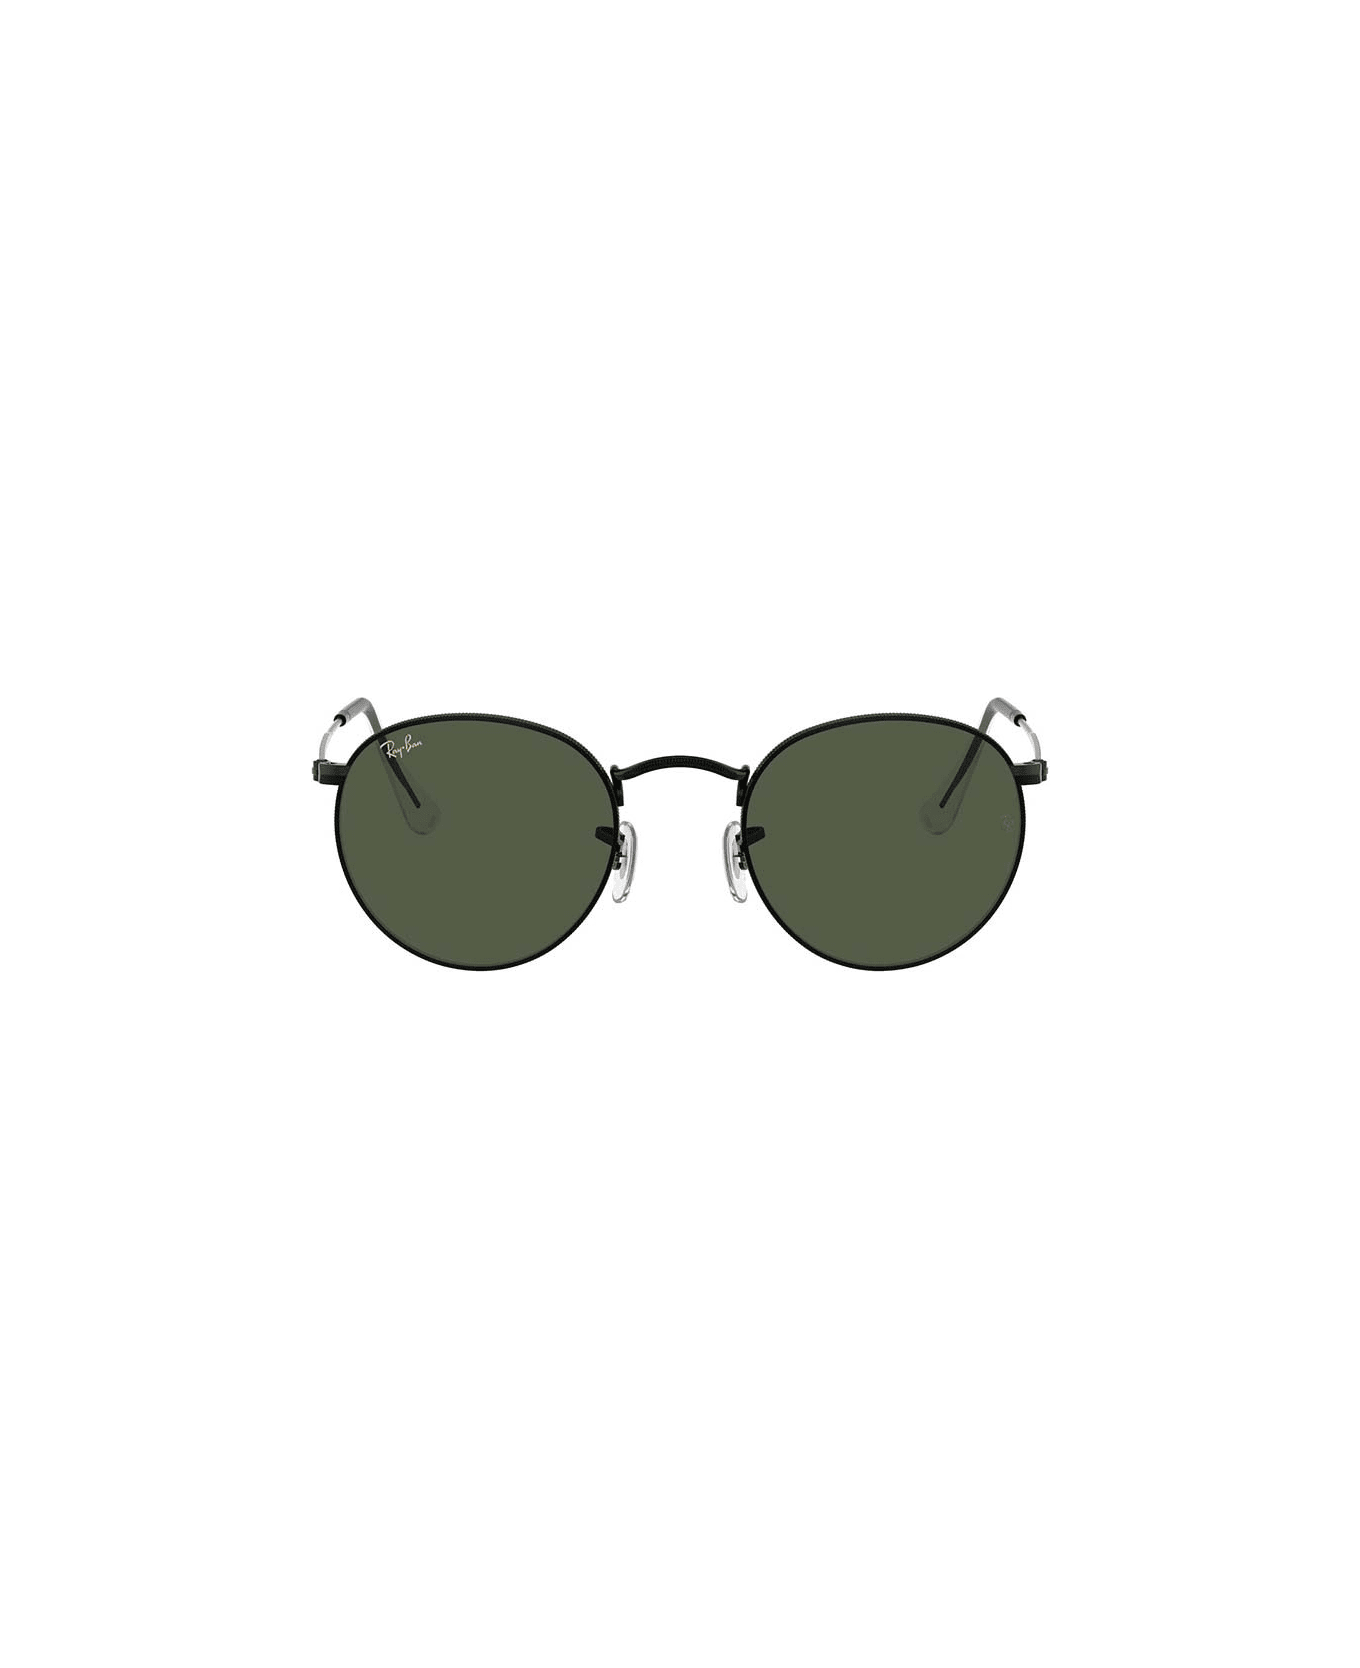 Ray-Ban Eyewear - Nero/Verde